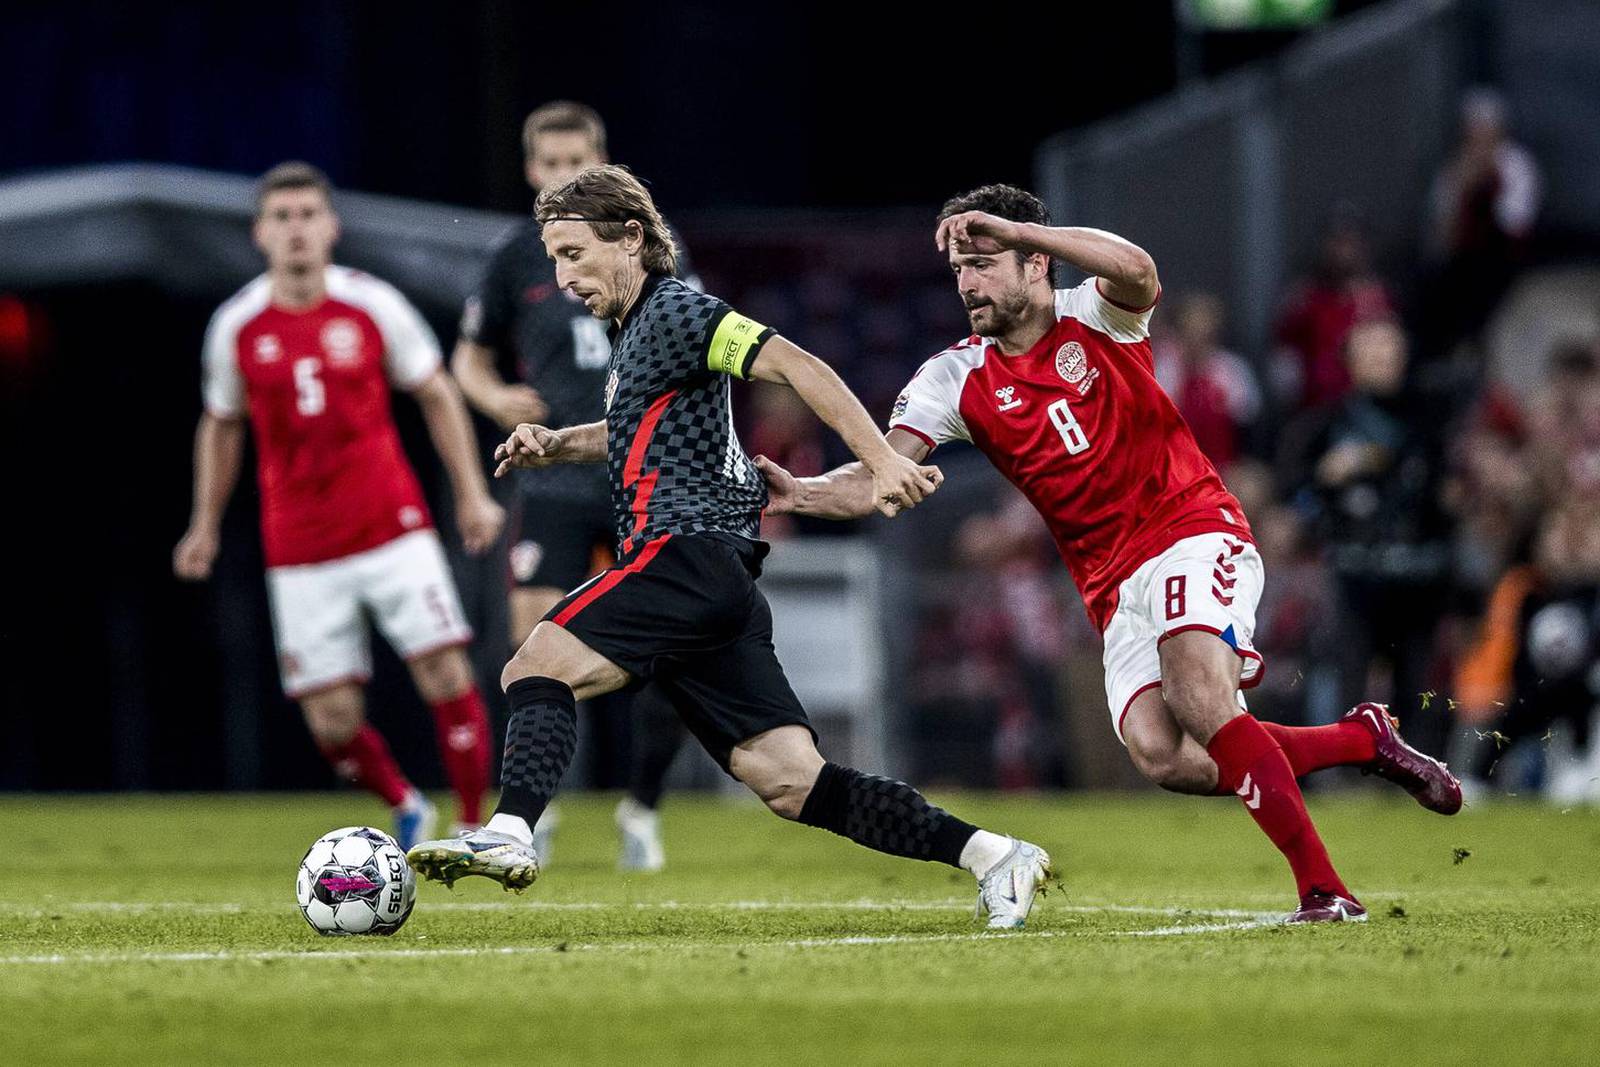 Kopenhagen: Hrvatska ubilježila prvu pobjedu u Ligi nacija, 'Vatreni' svladali Dansku 1:0 pogotkom Pašalića